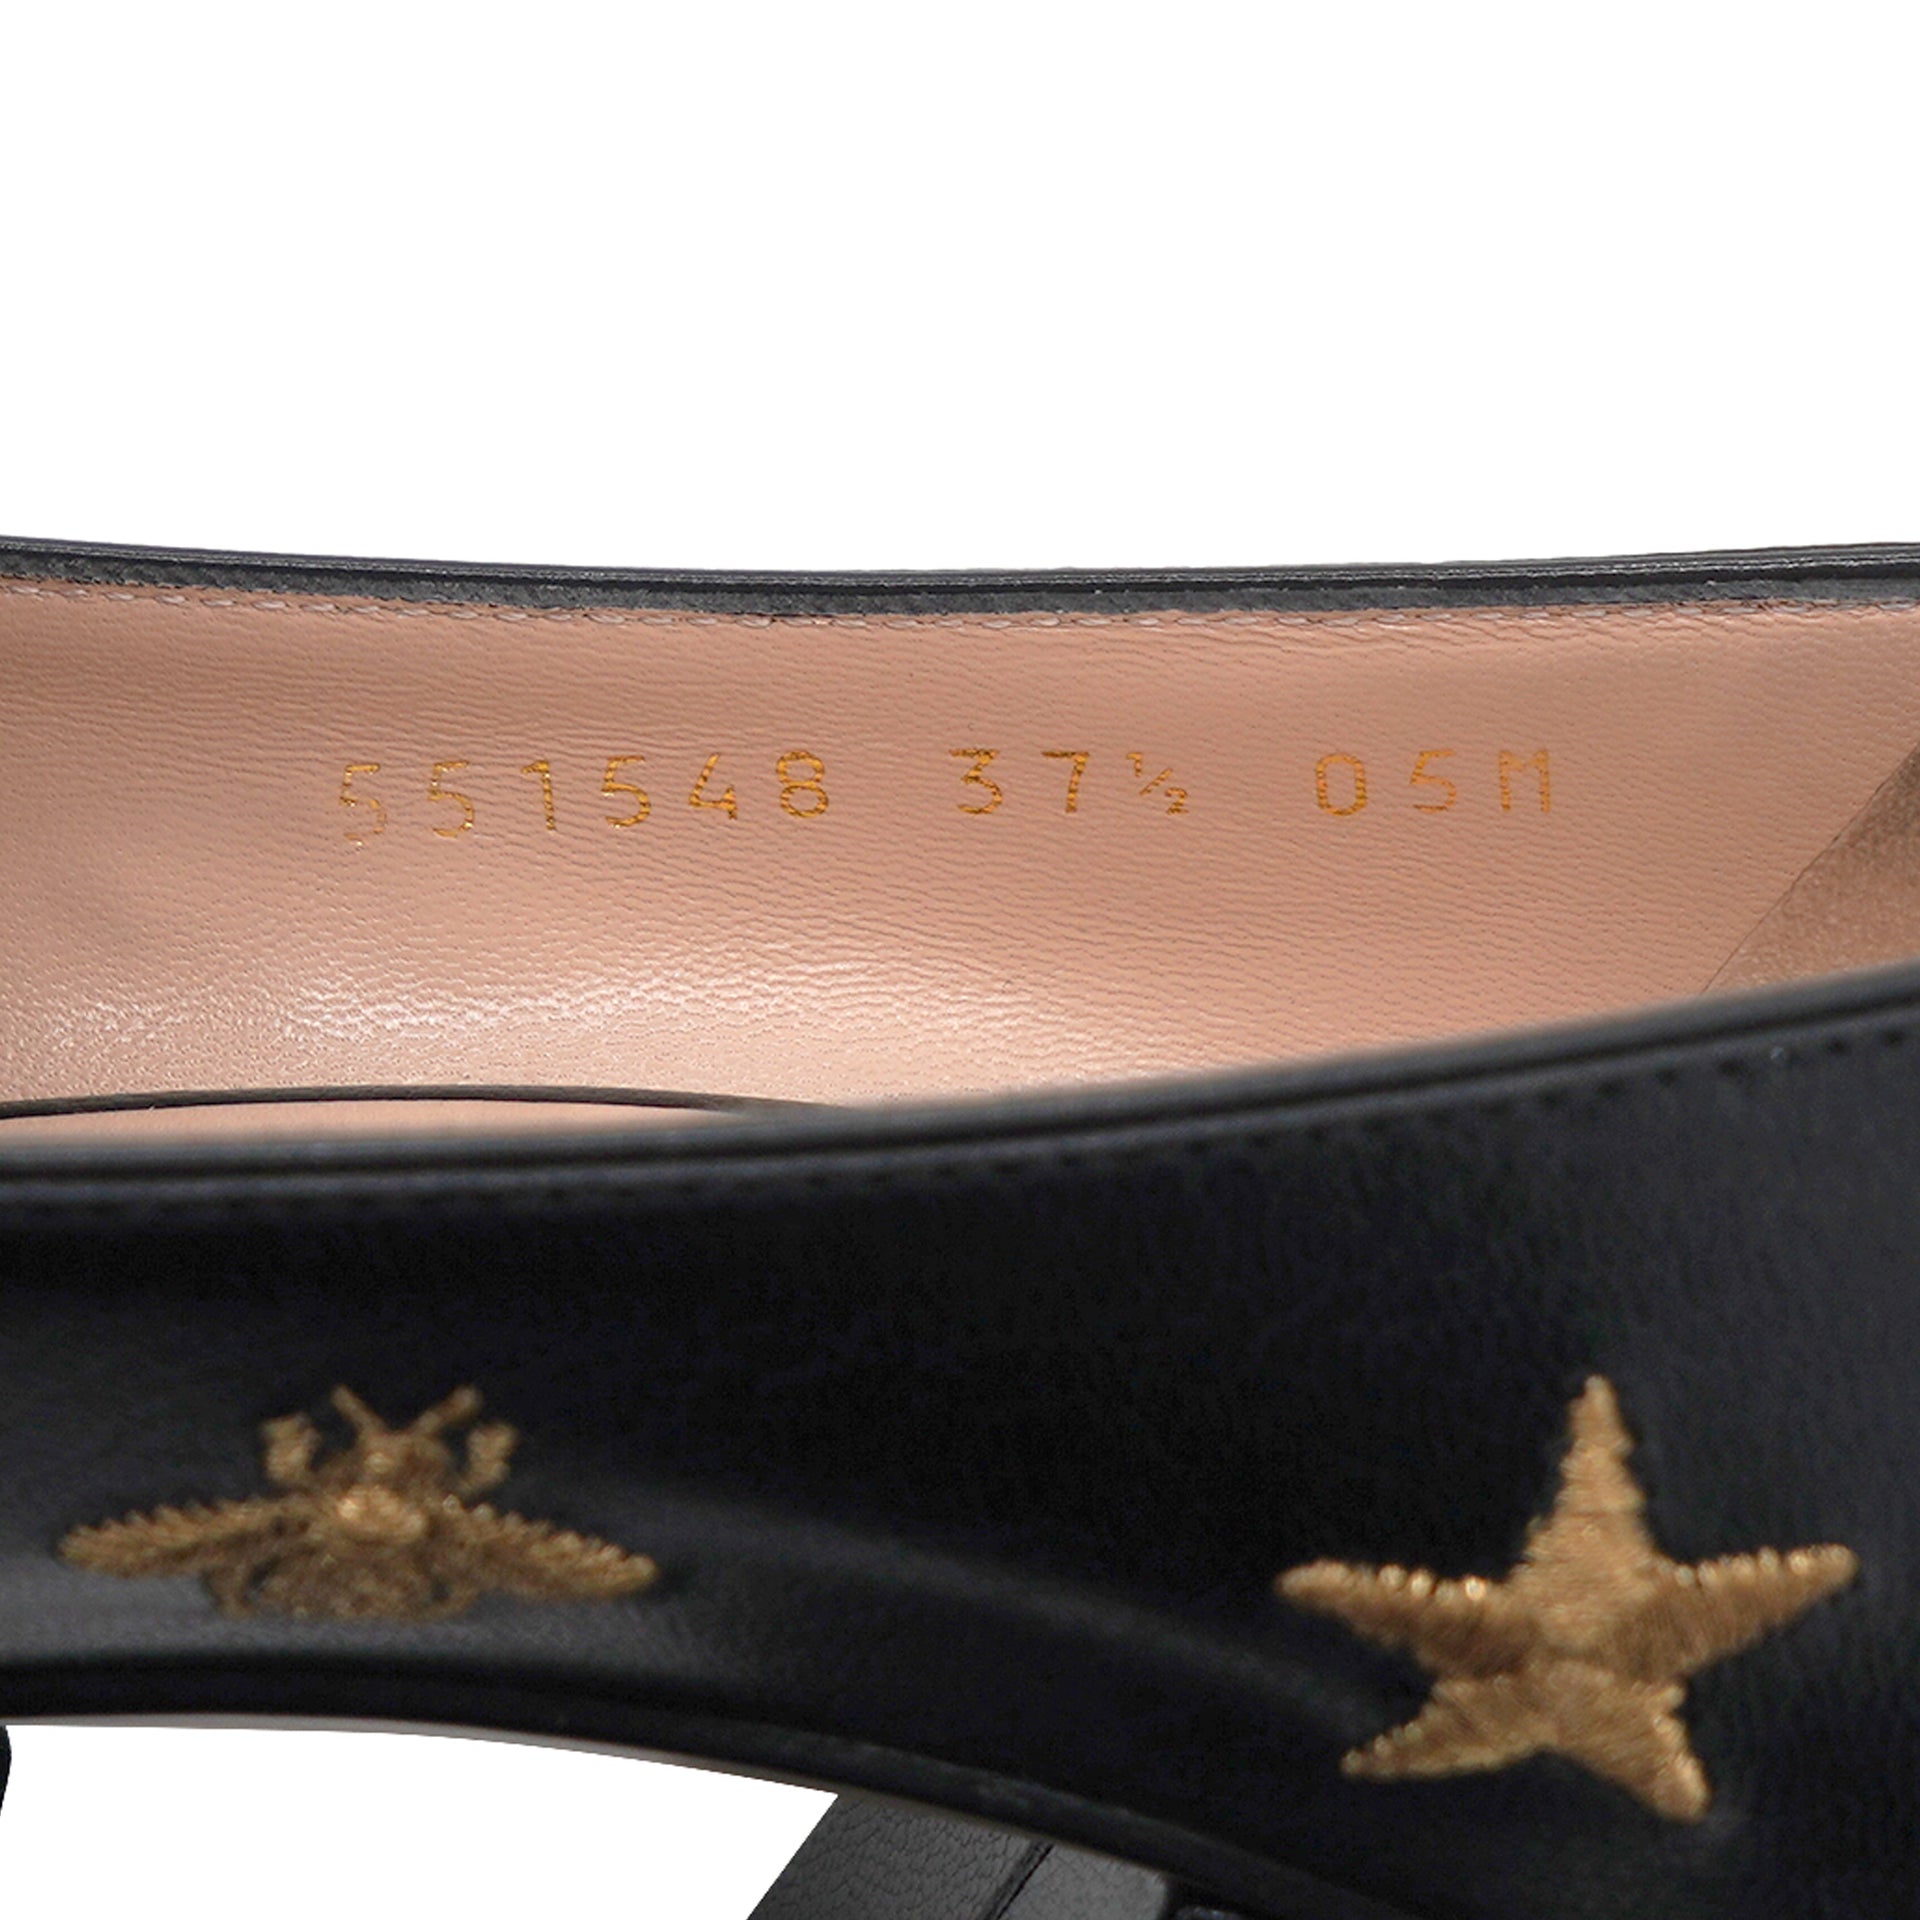 Goatskin Bee Star Embroidered GG Marmont Fringe Loafer Pumps 37.5 Black